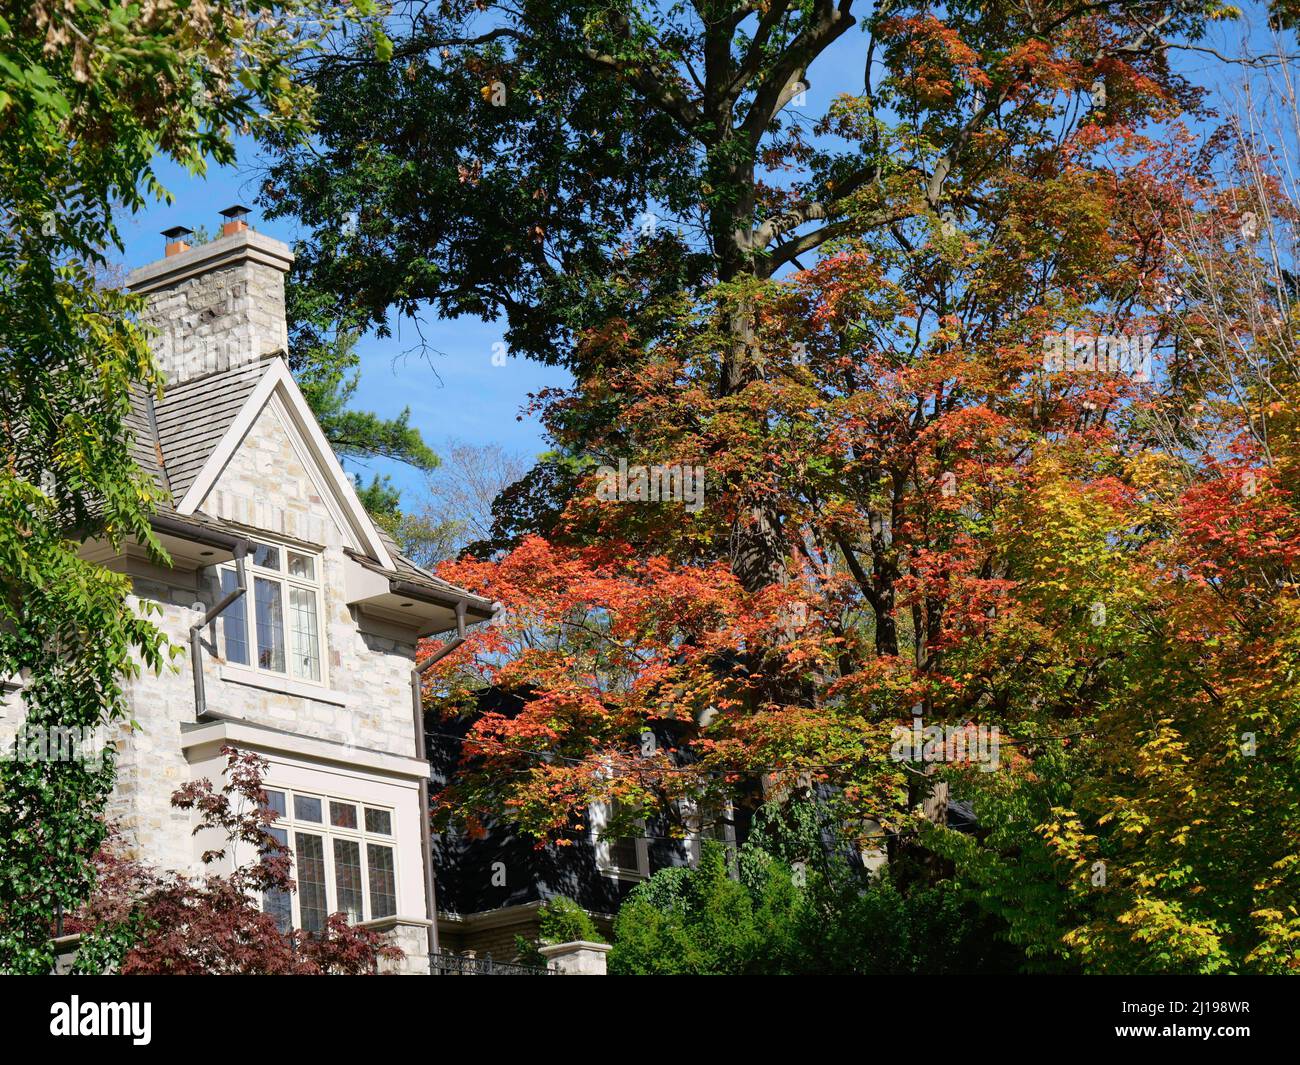 Maison entourée d'arbres aux couleurs éclatantes de l'automne Banque D'Images